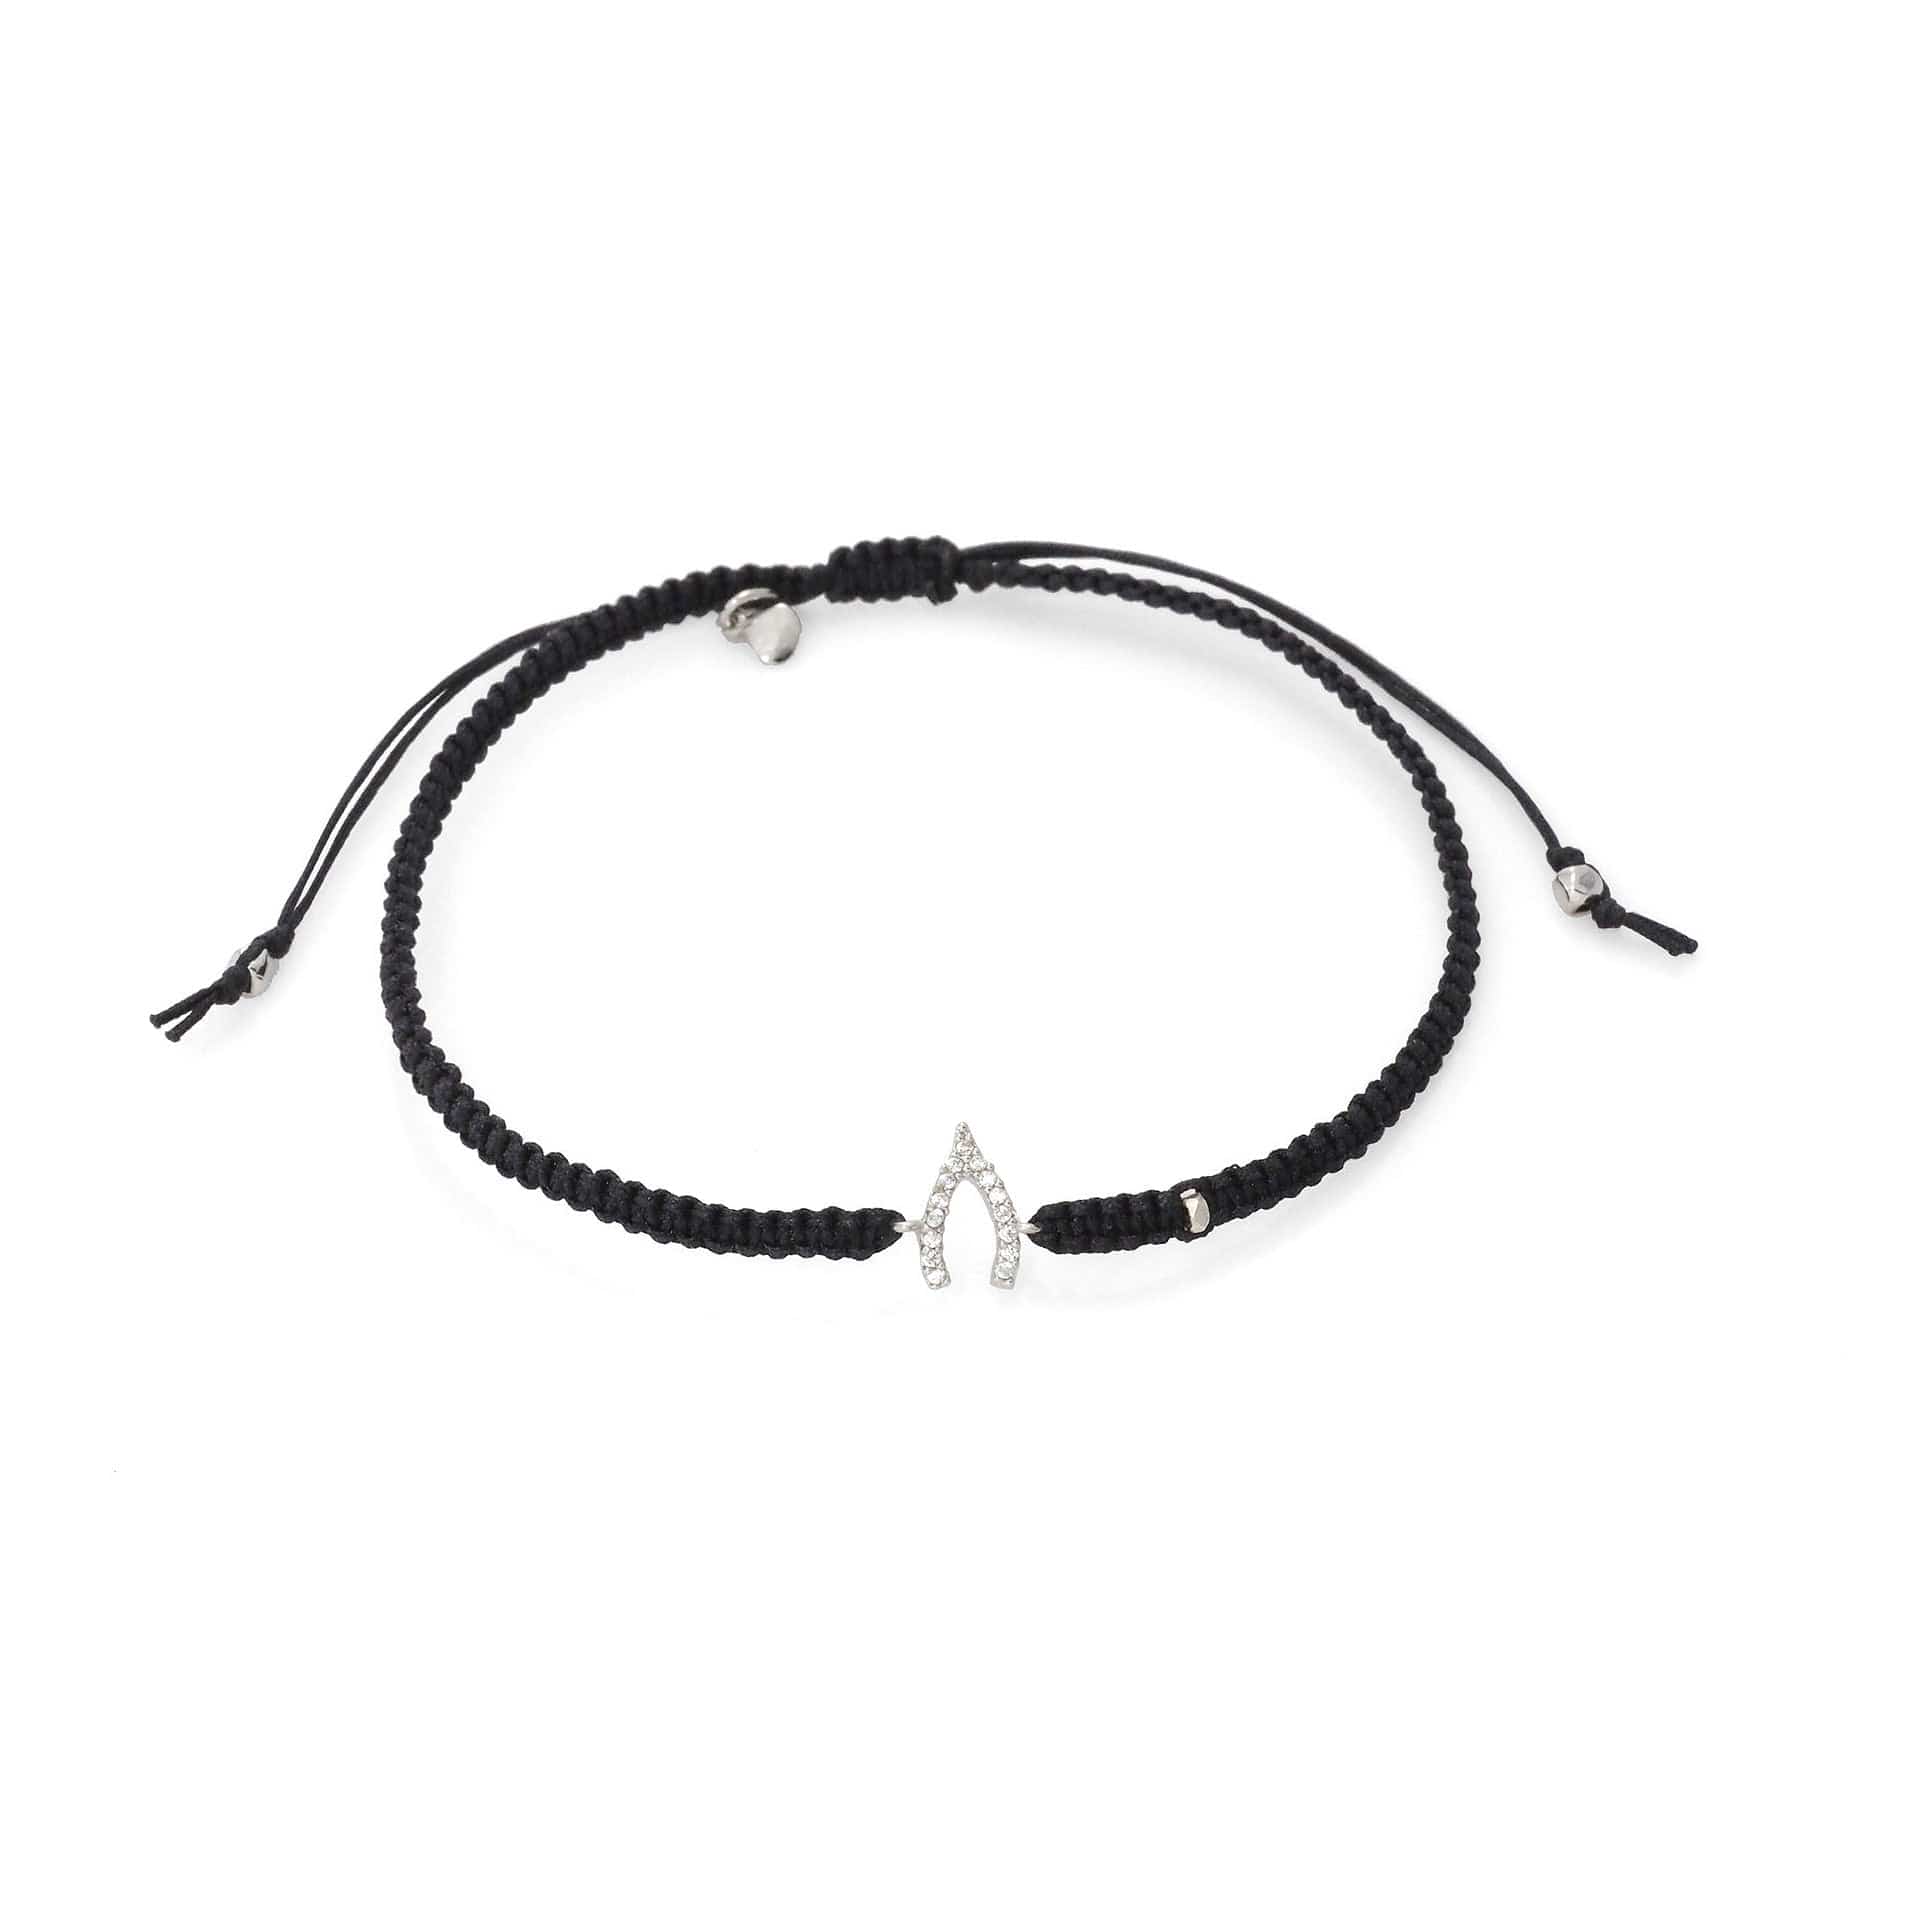 TAI JEWELRY Bracelet SILVER / BLACK Braided Silk Cord With Mini Wishbone